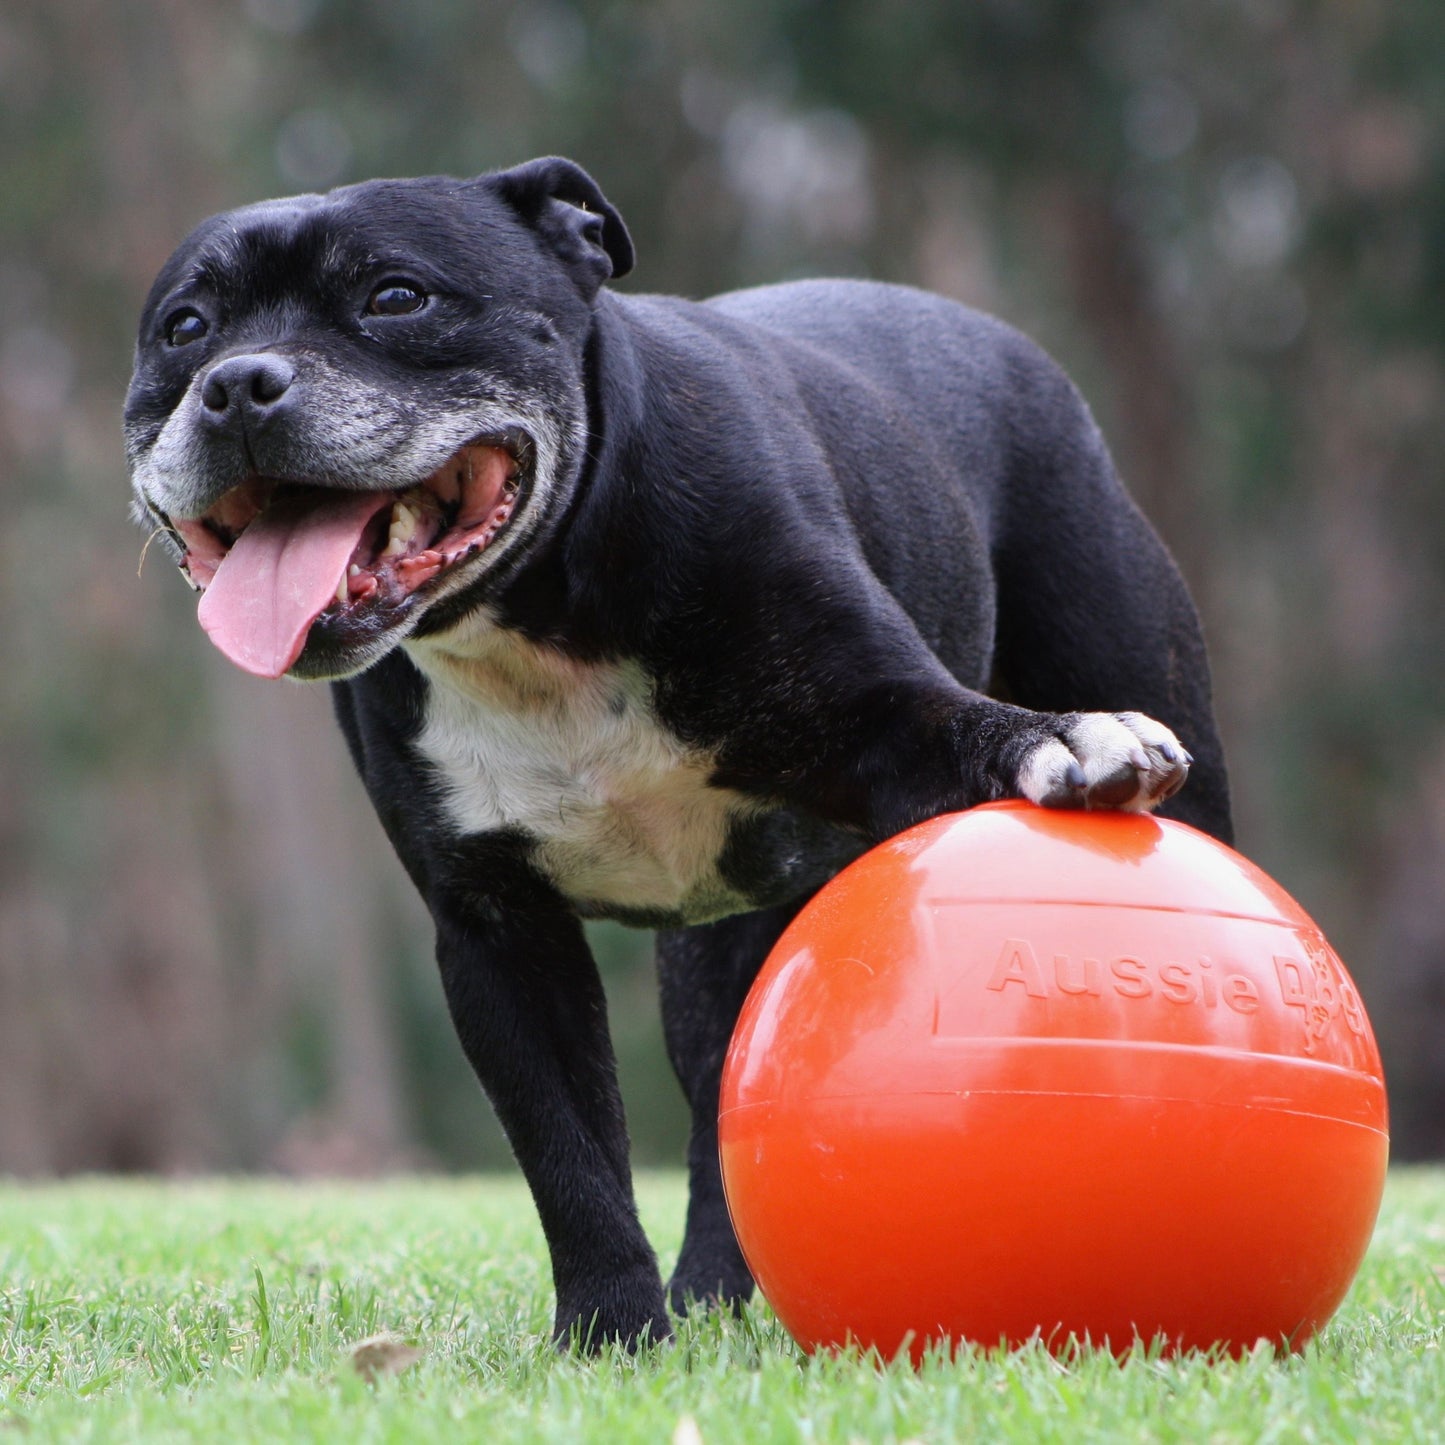 Aussie Dog Staffie Ball - Extra Tough | Puppy Pastimes.